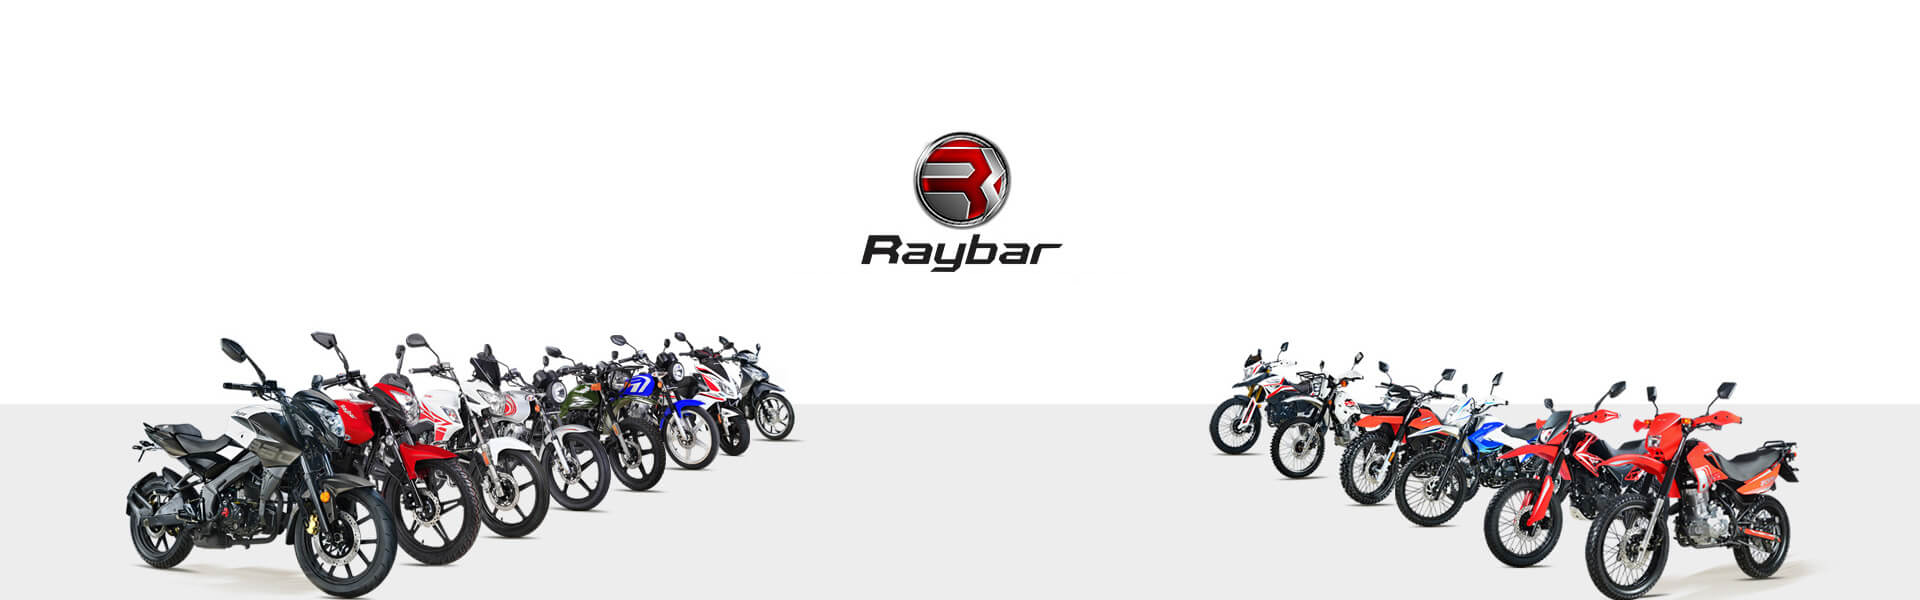 Raybar Motorcycles